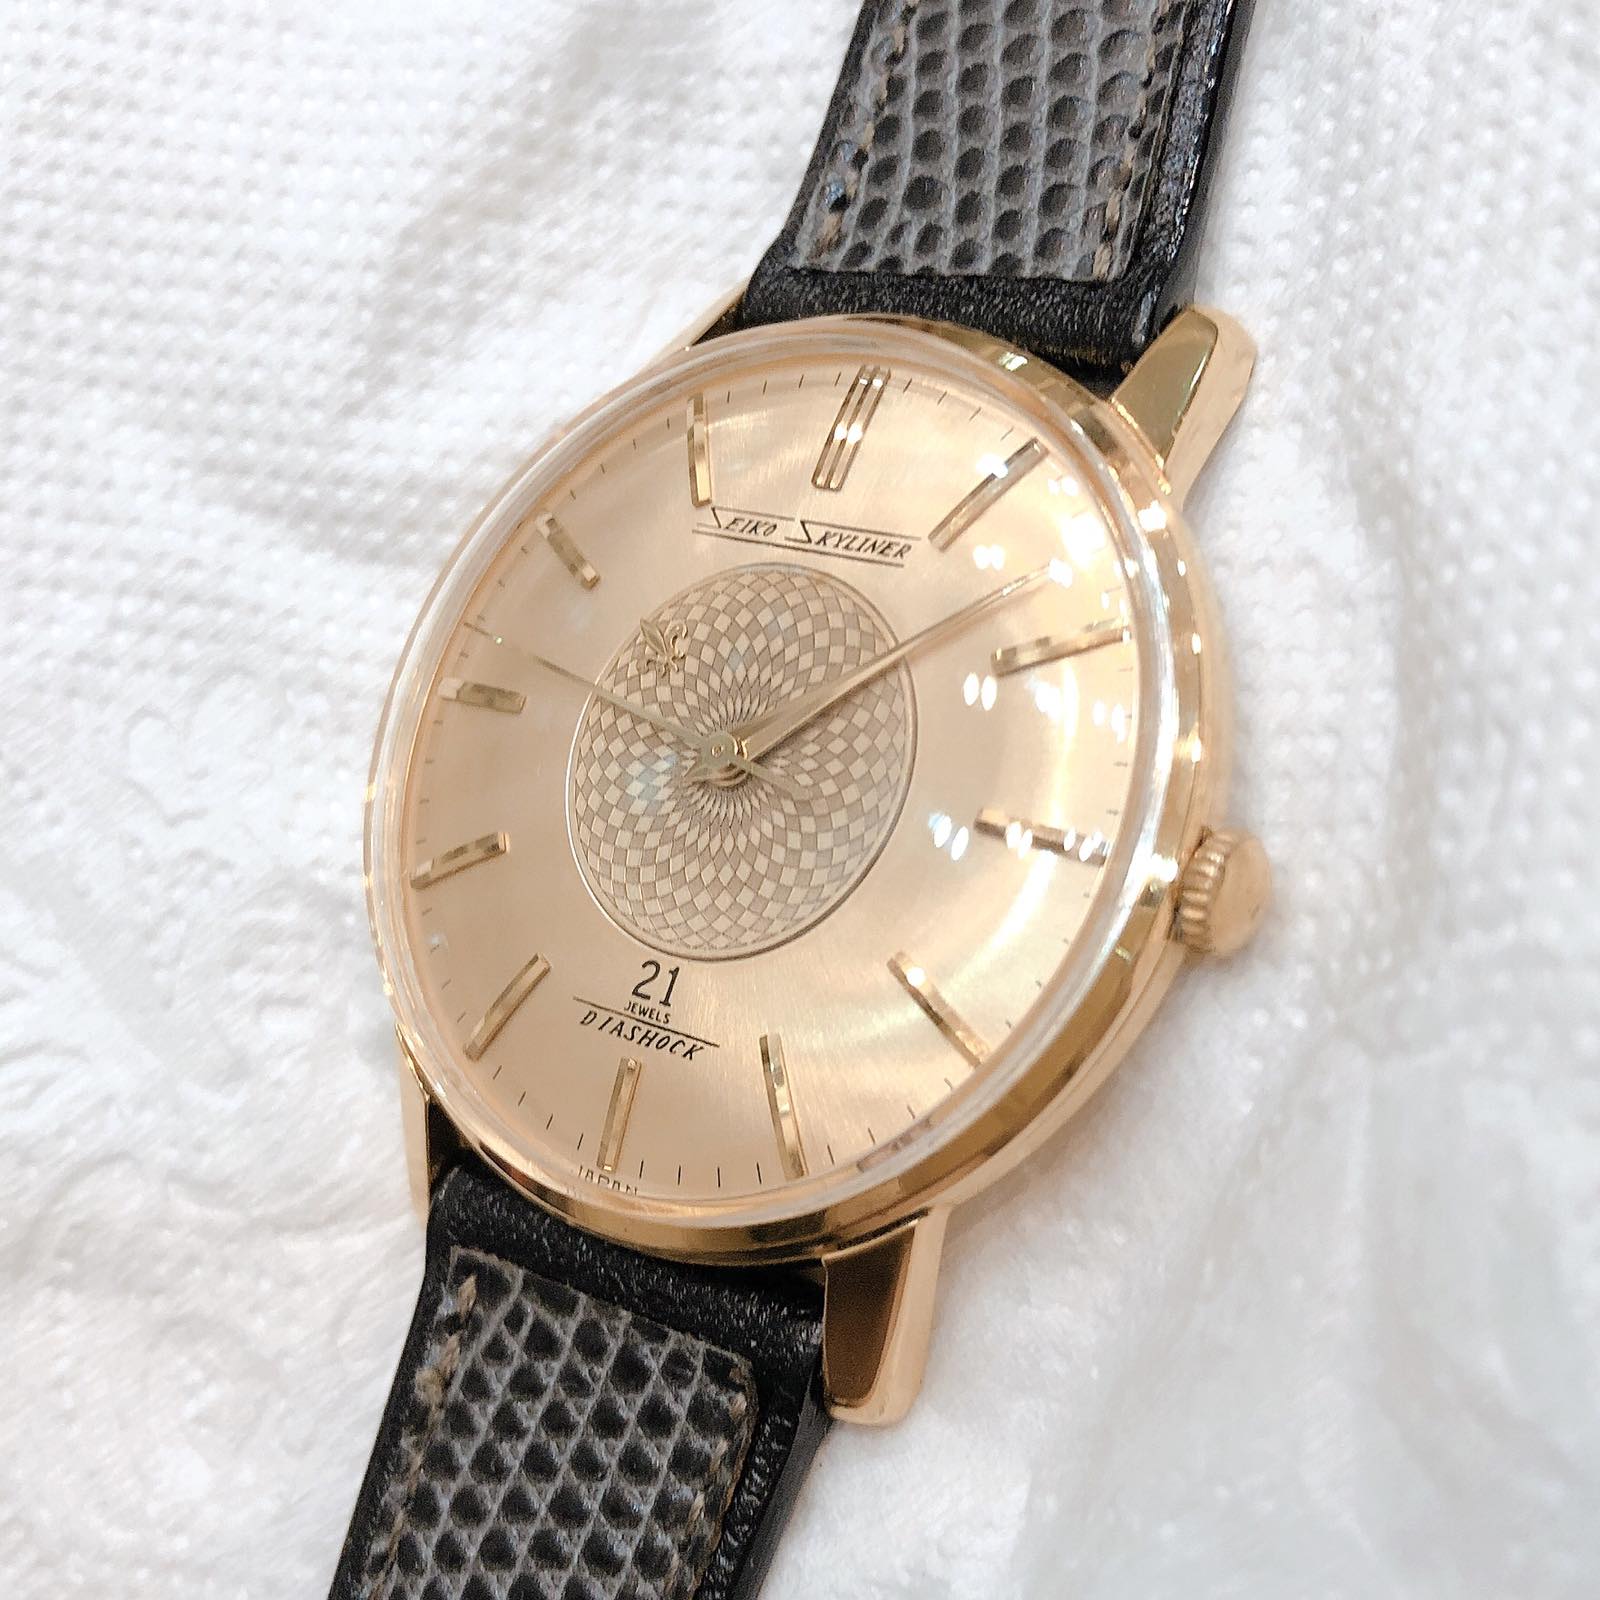 Đồng hồ cổ Seiko Skyline kim đĩa lên dây bọc vàng 14k goldfilled nhật bản